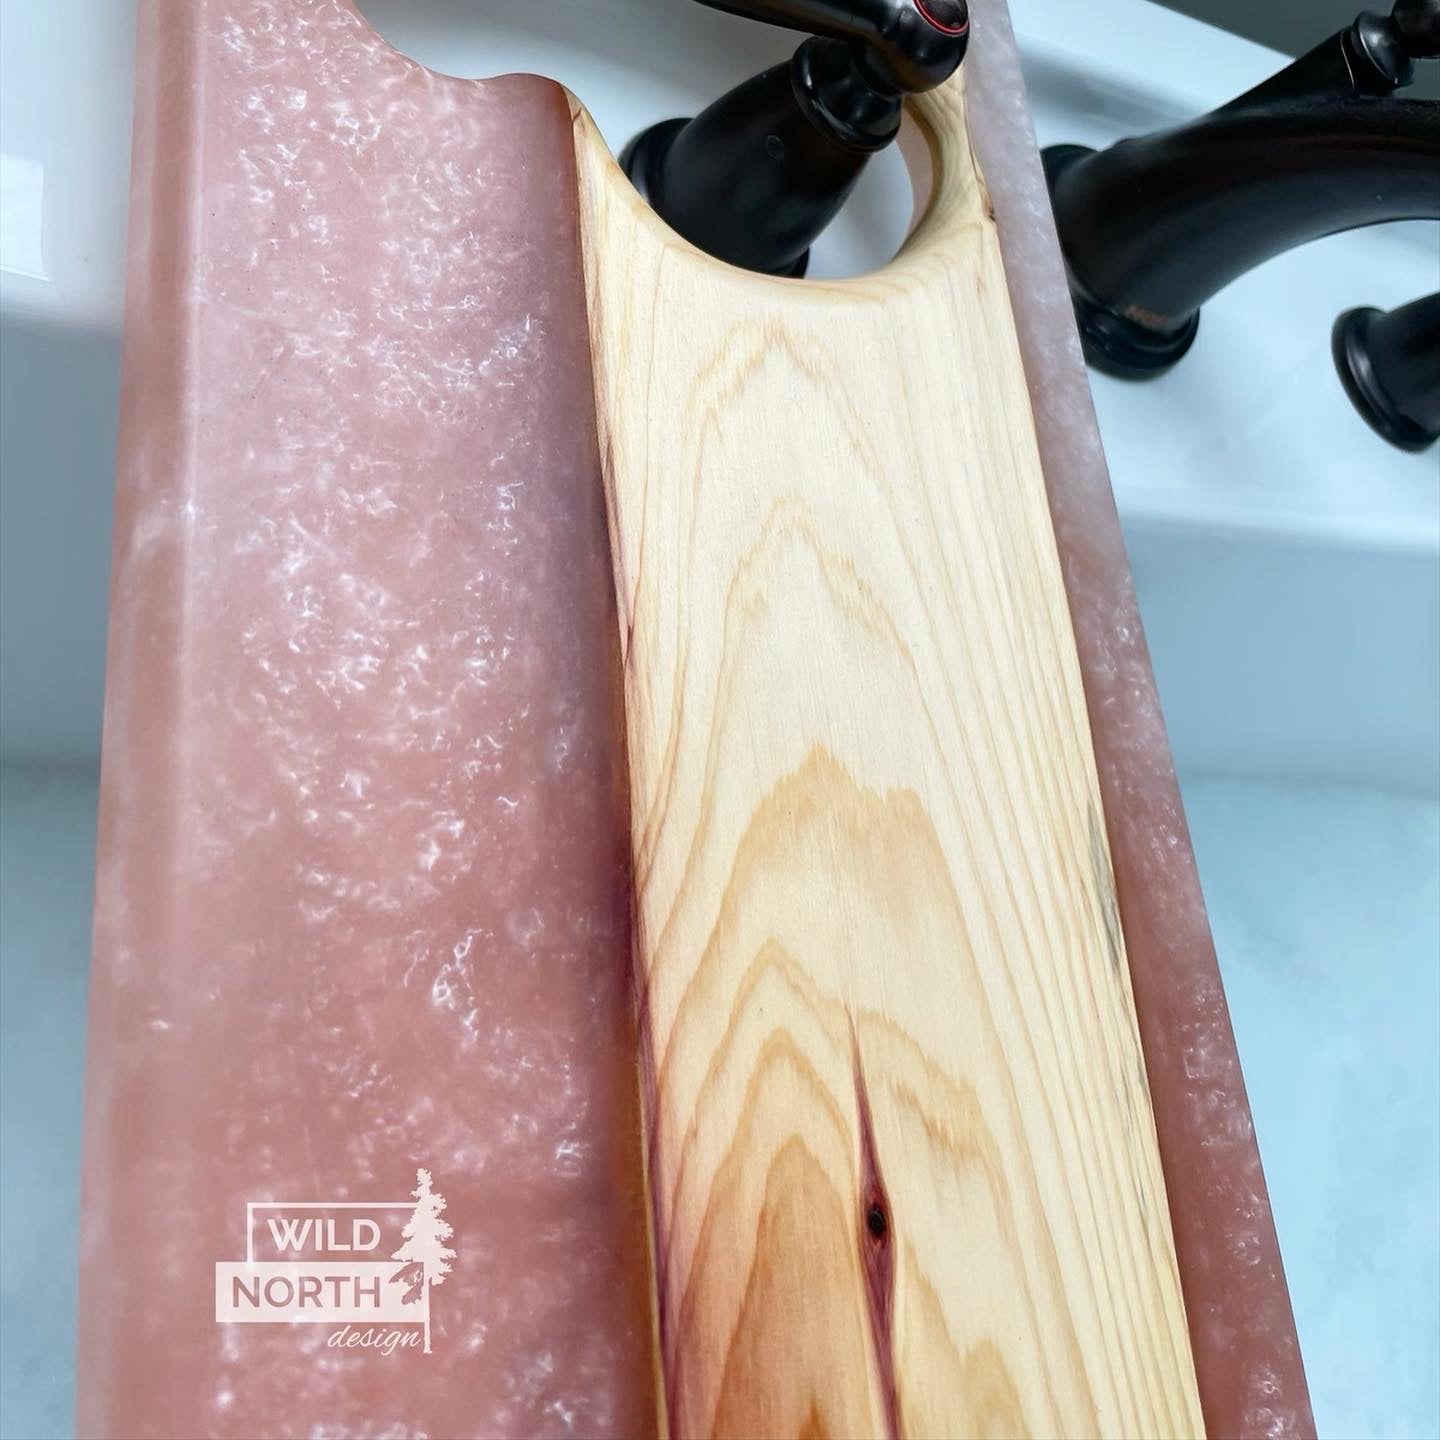 Custom order bath tray with epoxy resin